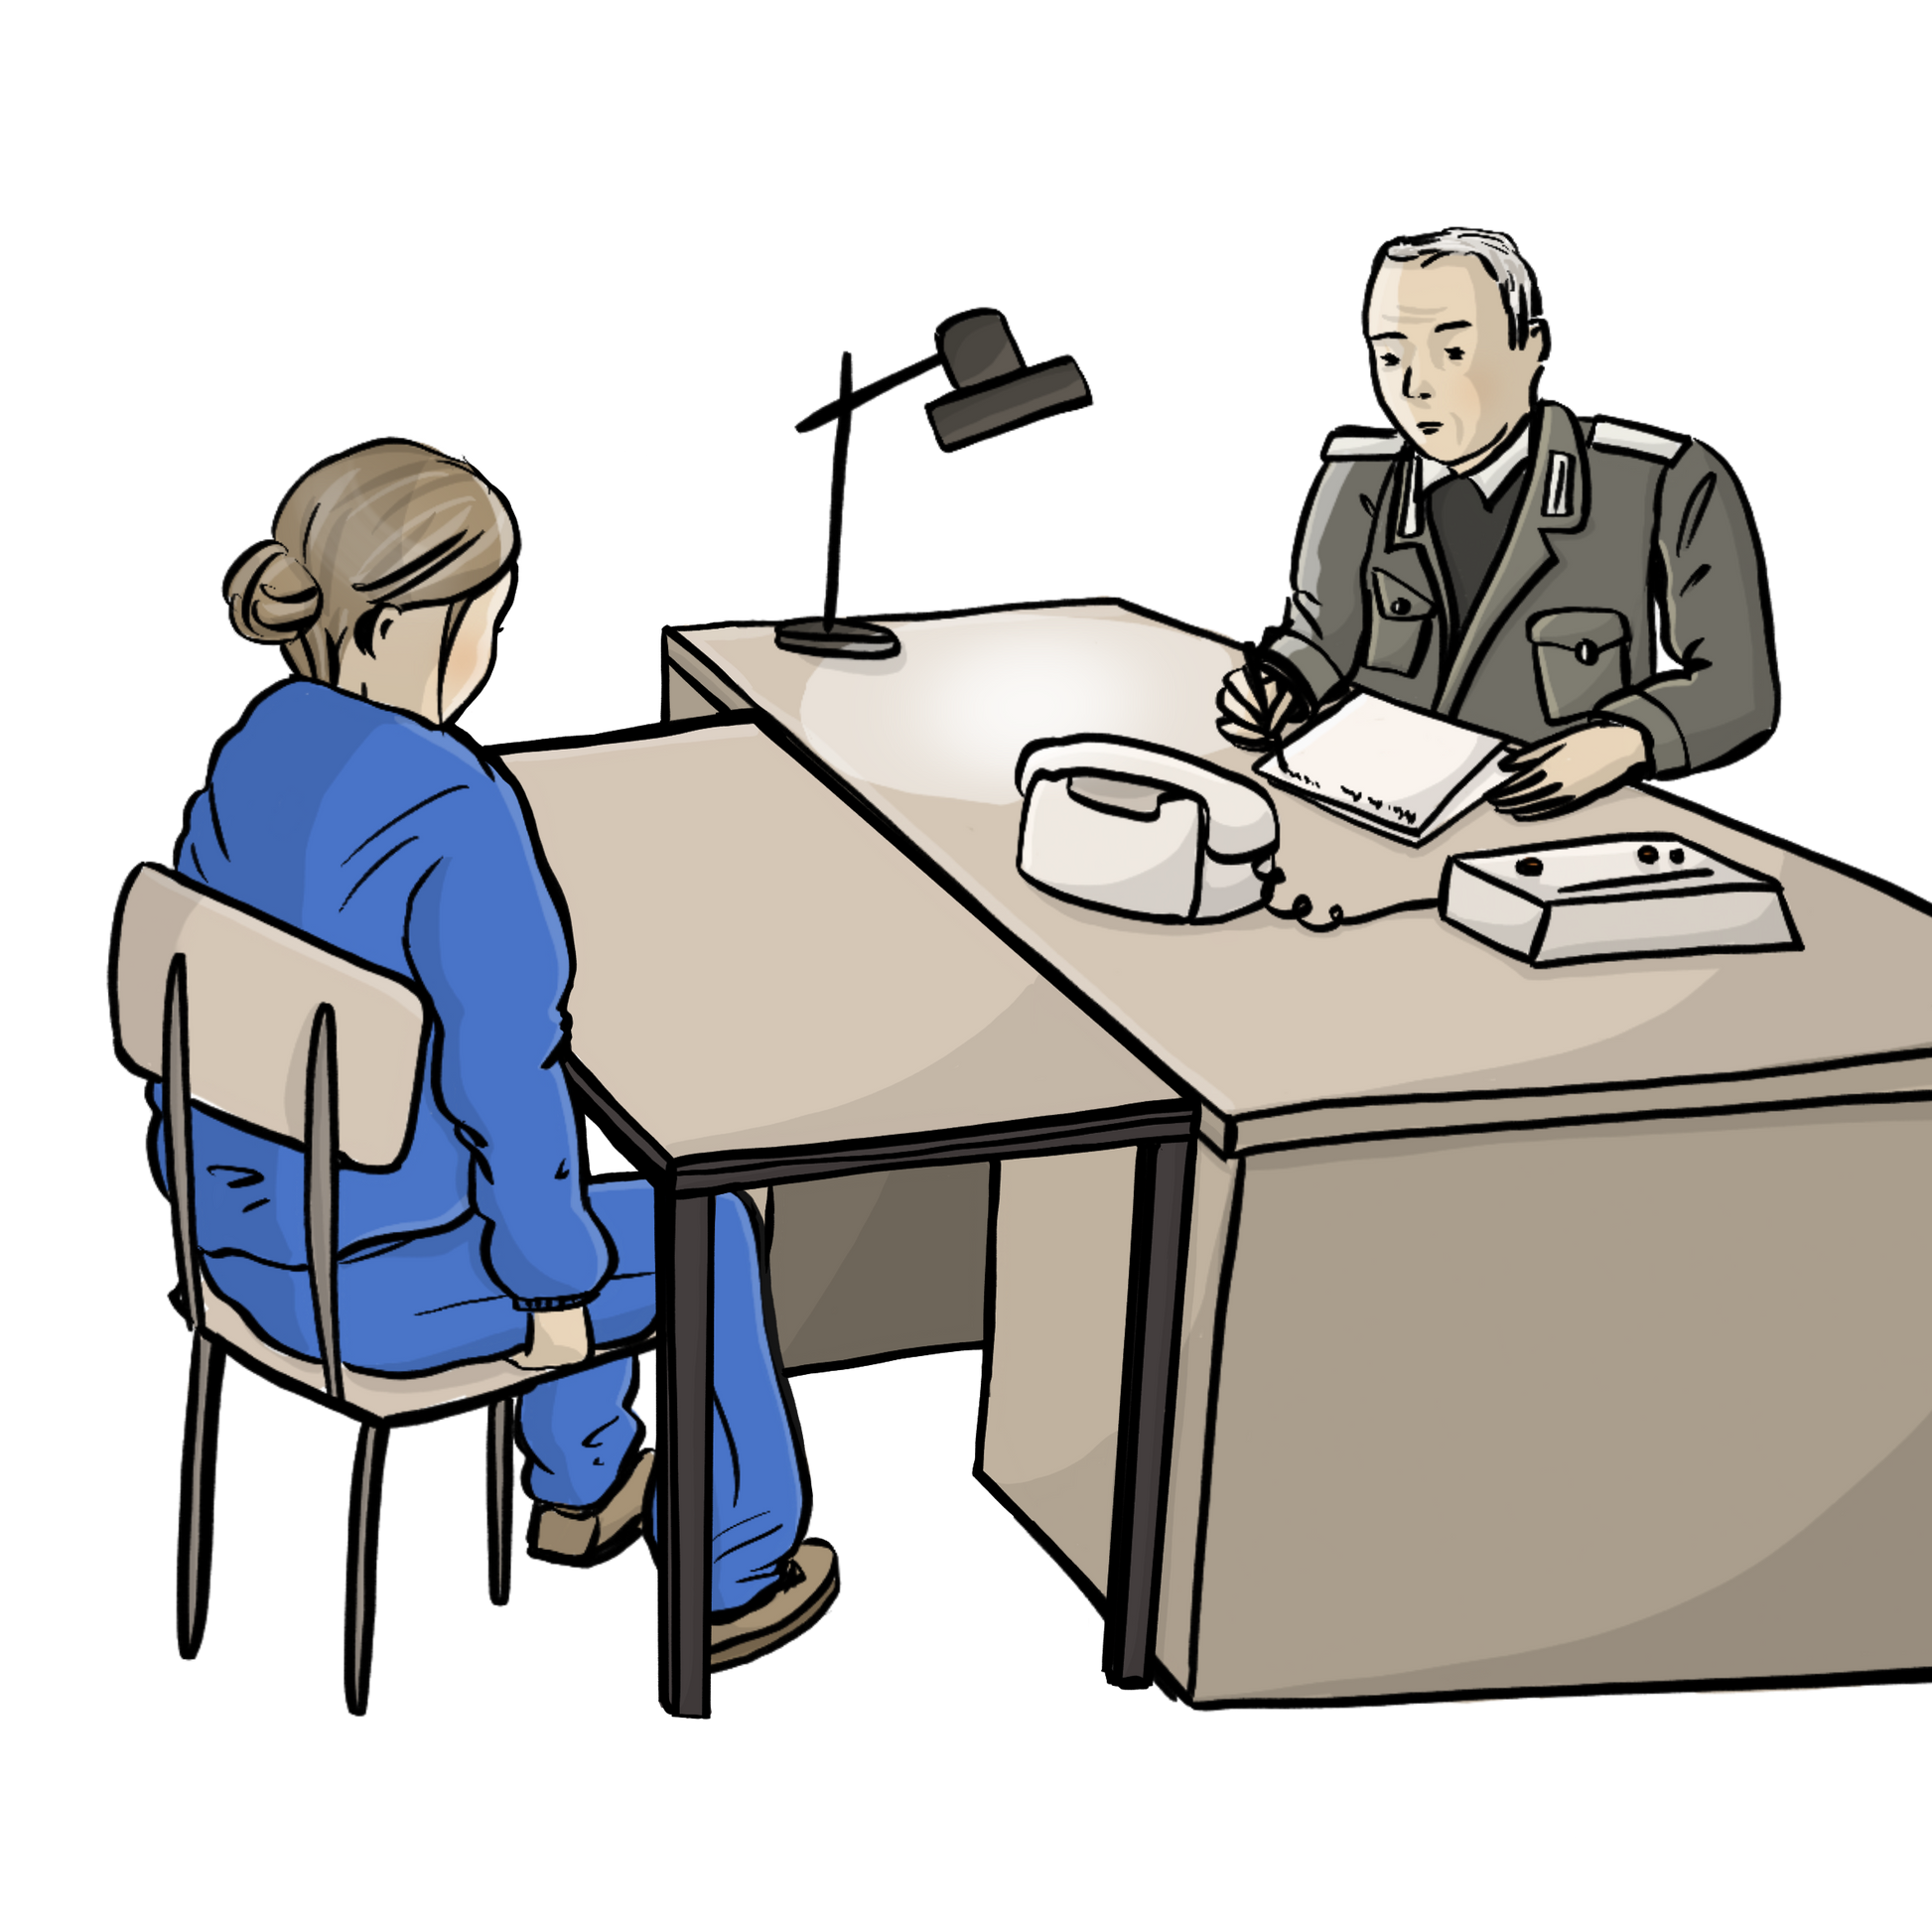 Eine Frau im blauen Overall sitzt vor einem Schreibtisch. Sie hat die Hände unter die Oberschenkel geschoben. Hinter dem Schreibtisch sitzt ein Mann in Uniform. Er schreibt etwas auf einen Block. 